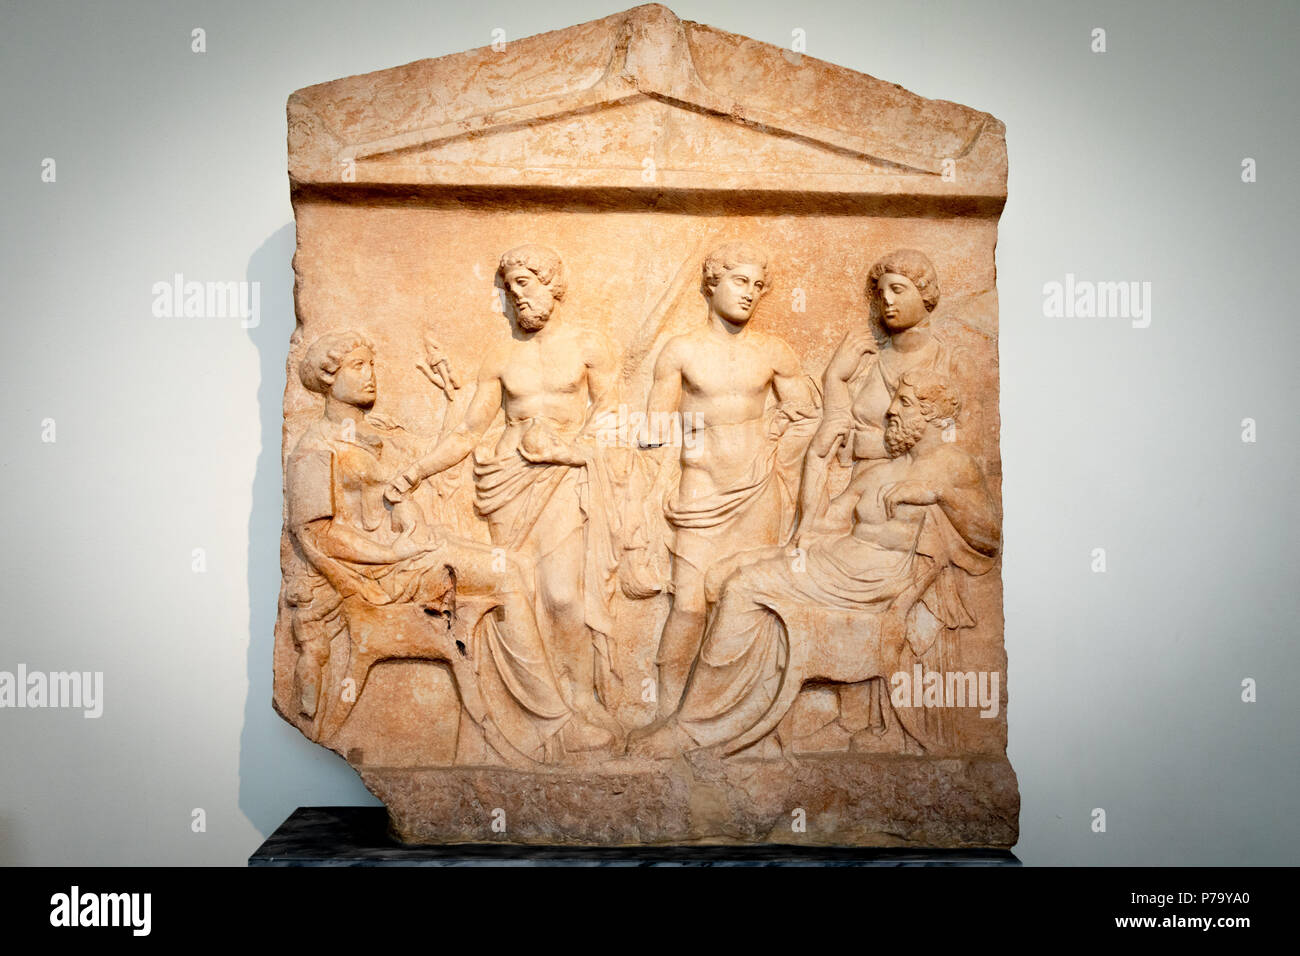 Grave Stele (monumento), Thespian marmo, trovata nei pressi di Tebe, Beozia, Grecia, possibili origini Boeotian, lapidi funerarie, fine del V secolo A.C. Foto Stock